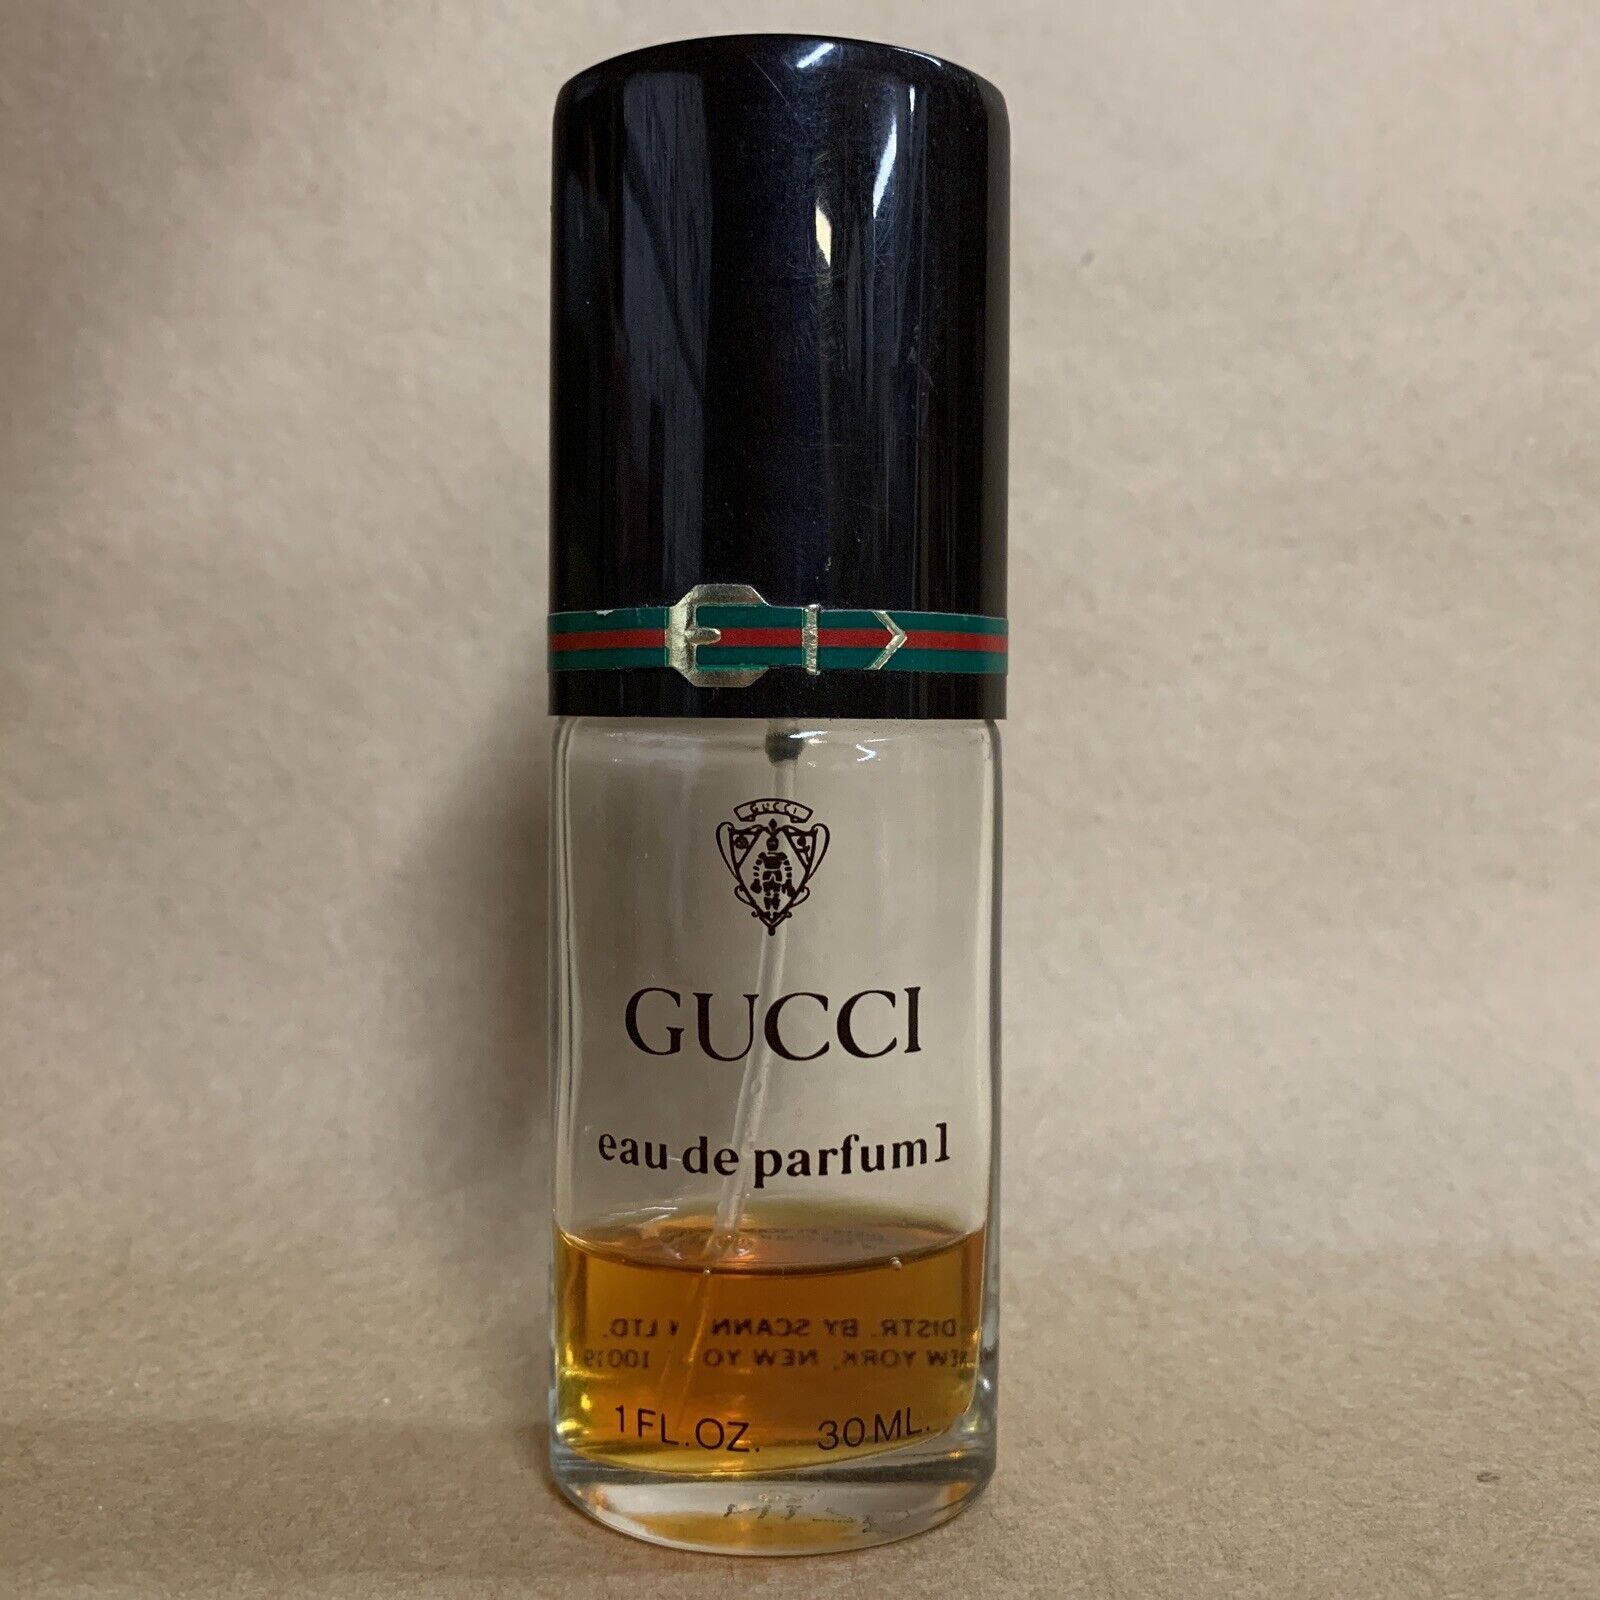 Vintage Gucci No 1 Eau de Parfum Spray 1oz